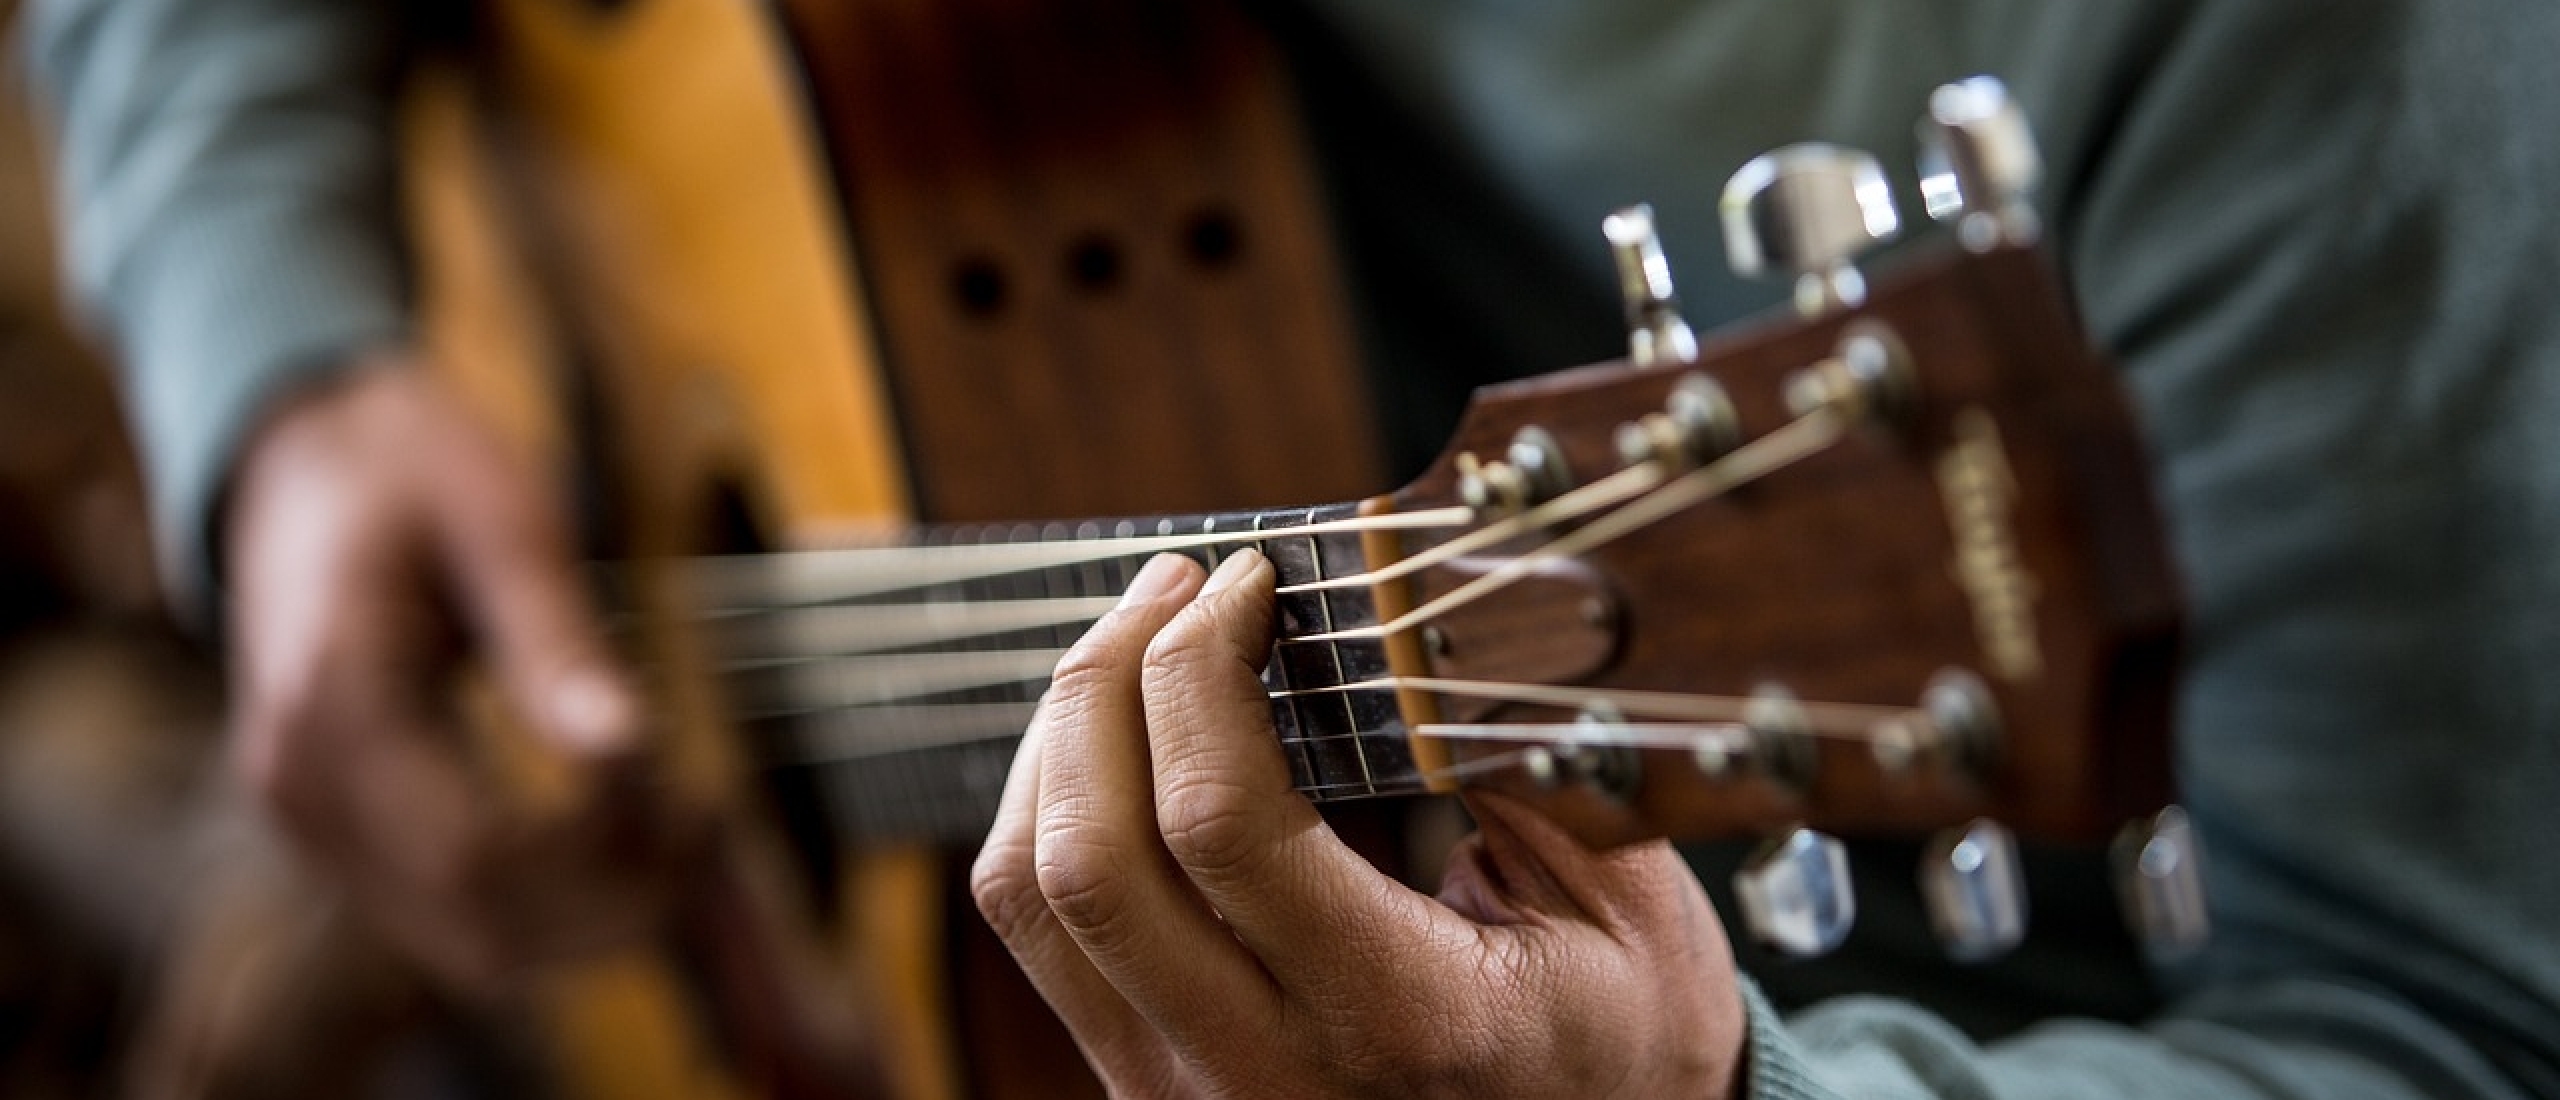 Muziek transponeren: Hoe speel je liedjes in een andere toonsoort op je gitaar?